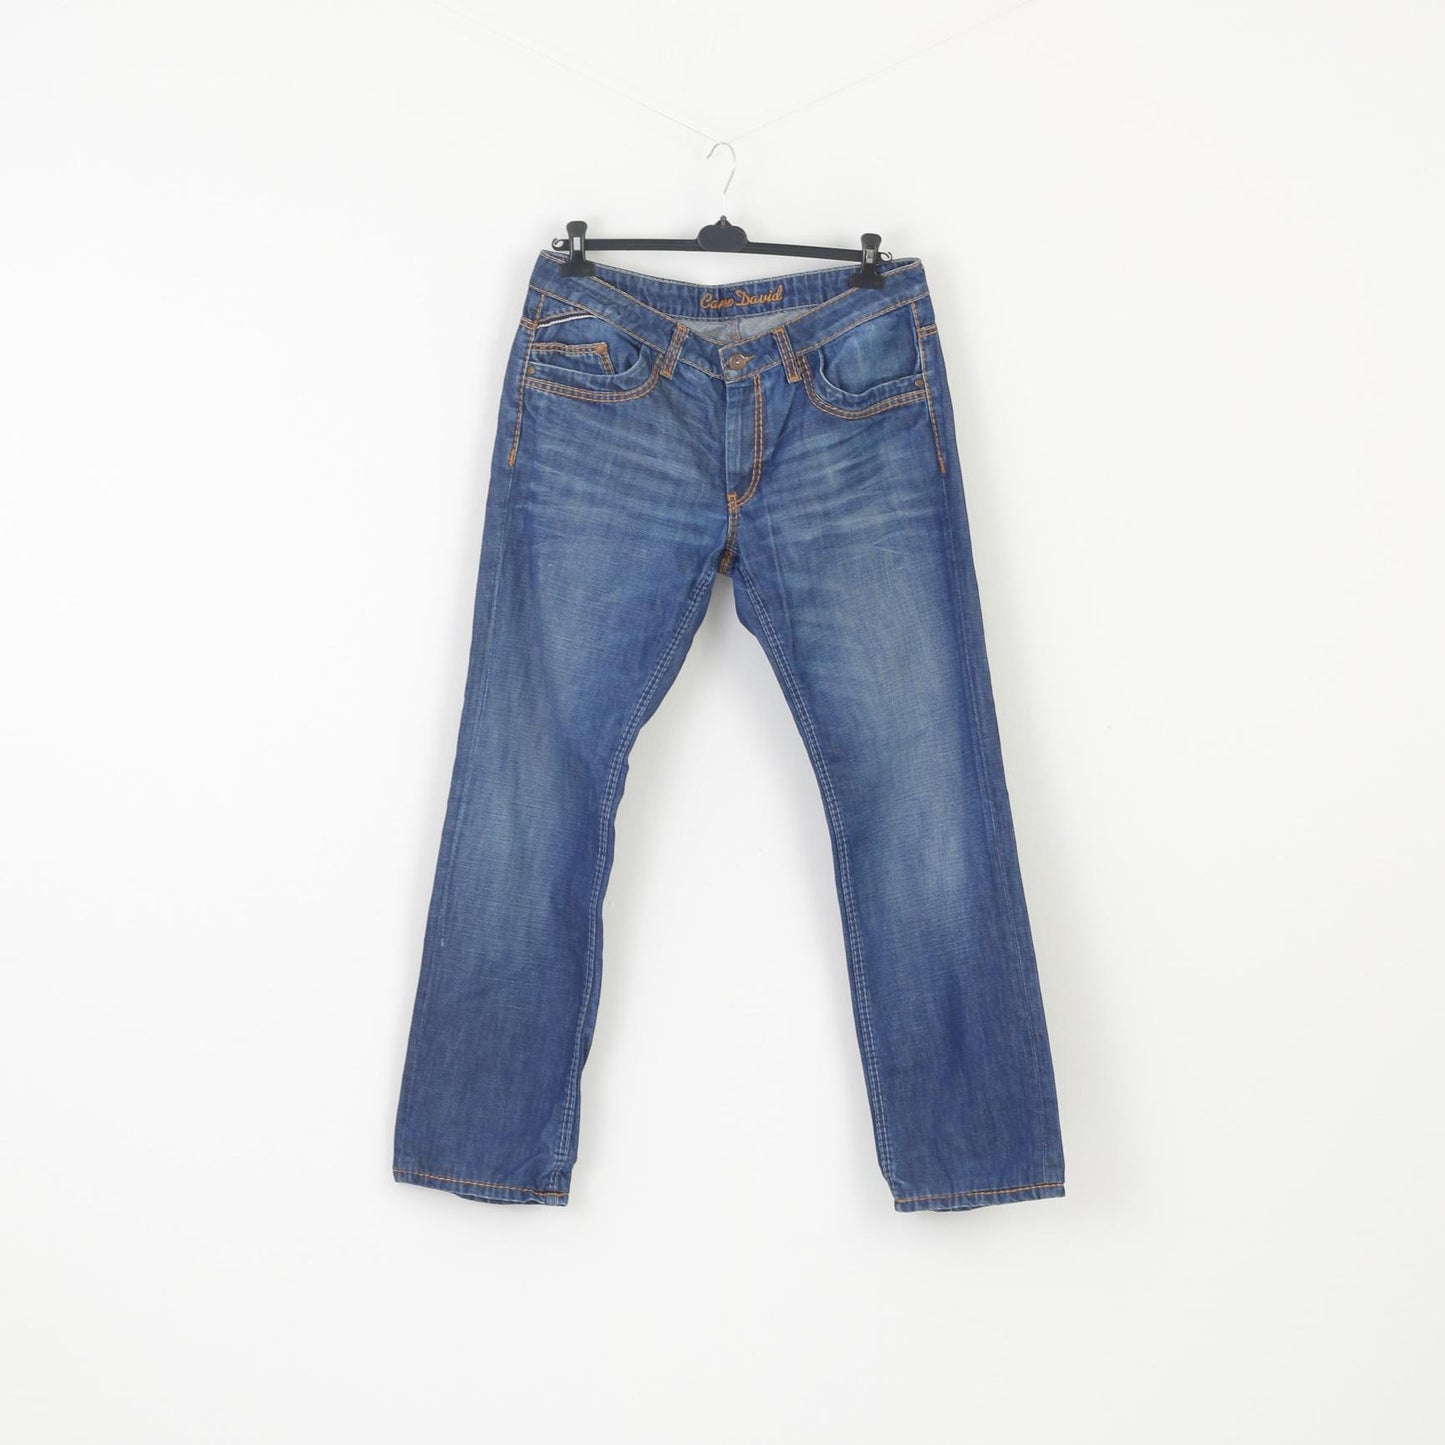 Camp David Men 36 Jeans Denim Cotton Trousers Leg Navy – Clothes Straight Retrospect P Long